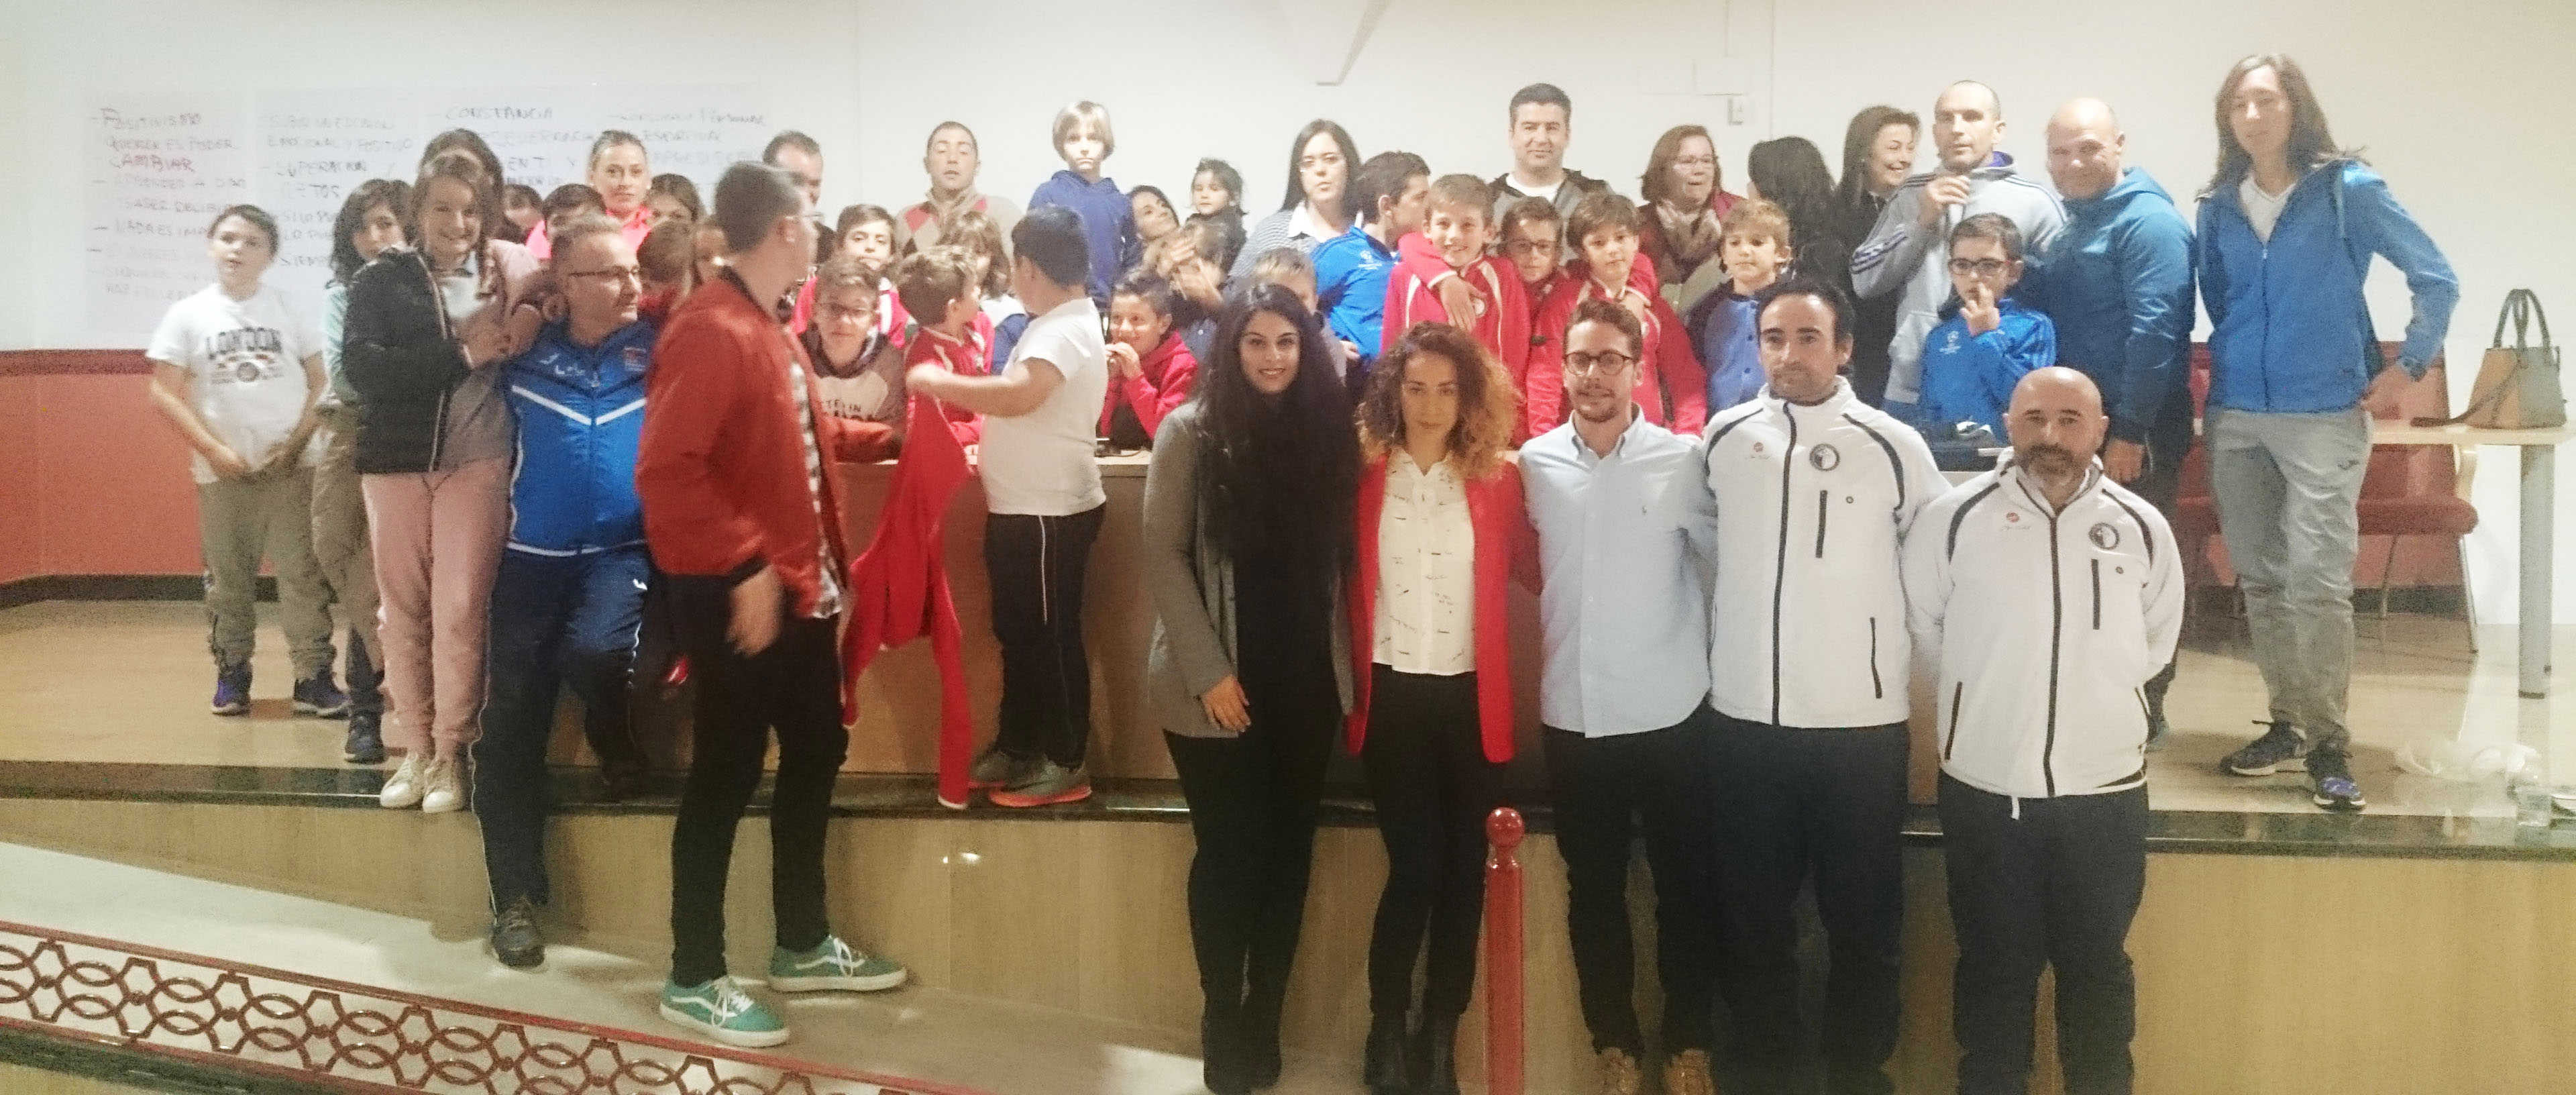 Escuela de Fútbol Lucecor celebró una charla sobre nutrición para niños con la colaboración de Clínica Gauss